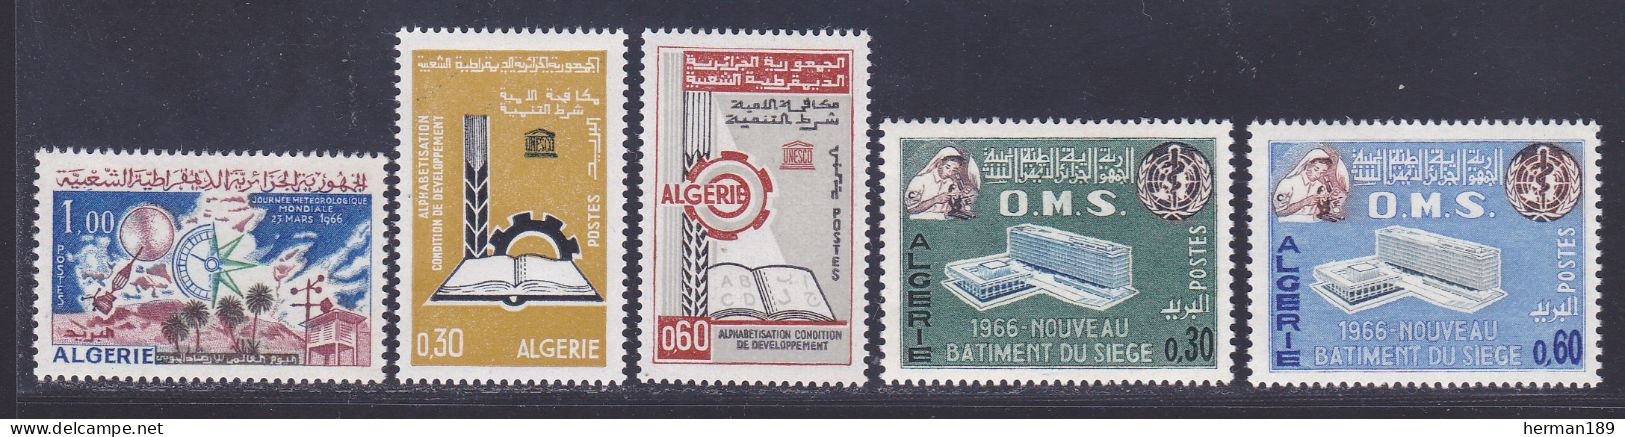 ALGERIE N°  421, 422 & 423, 424 & 425 ** MNH Neufs Sans Charnière, TB (D7800) Sujets Divers - 1966 - Algeria (1962-...)